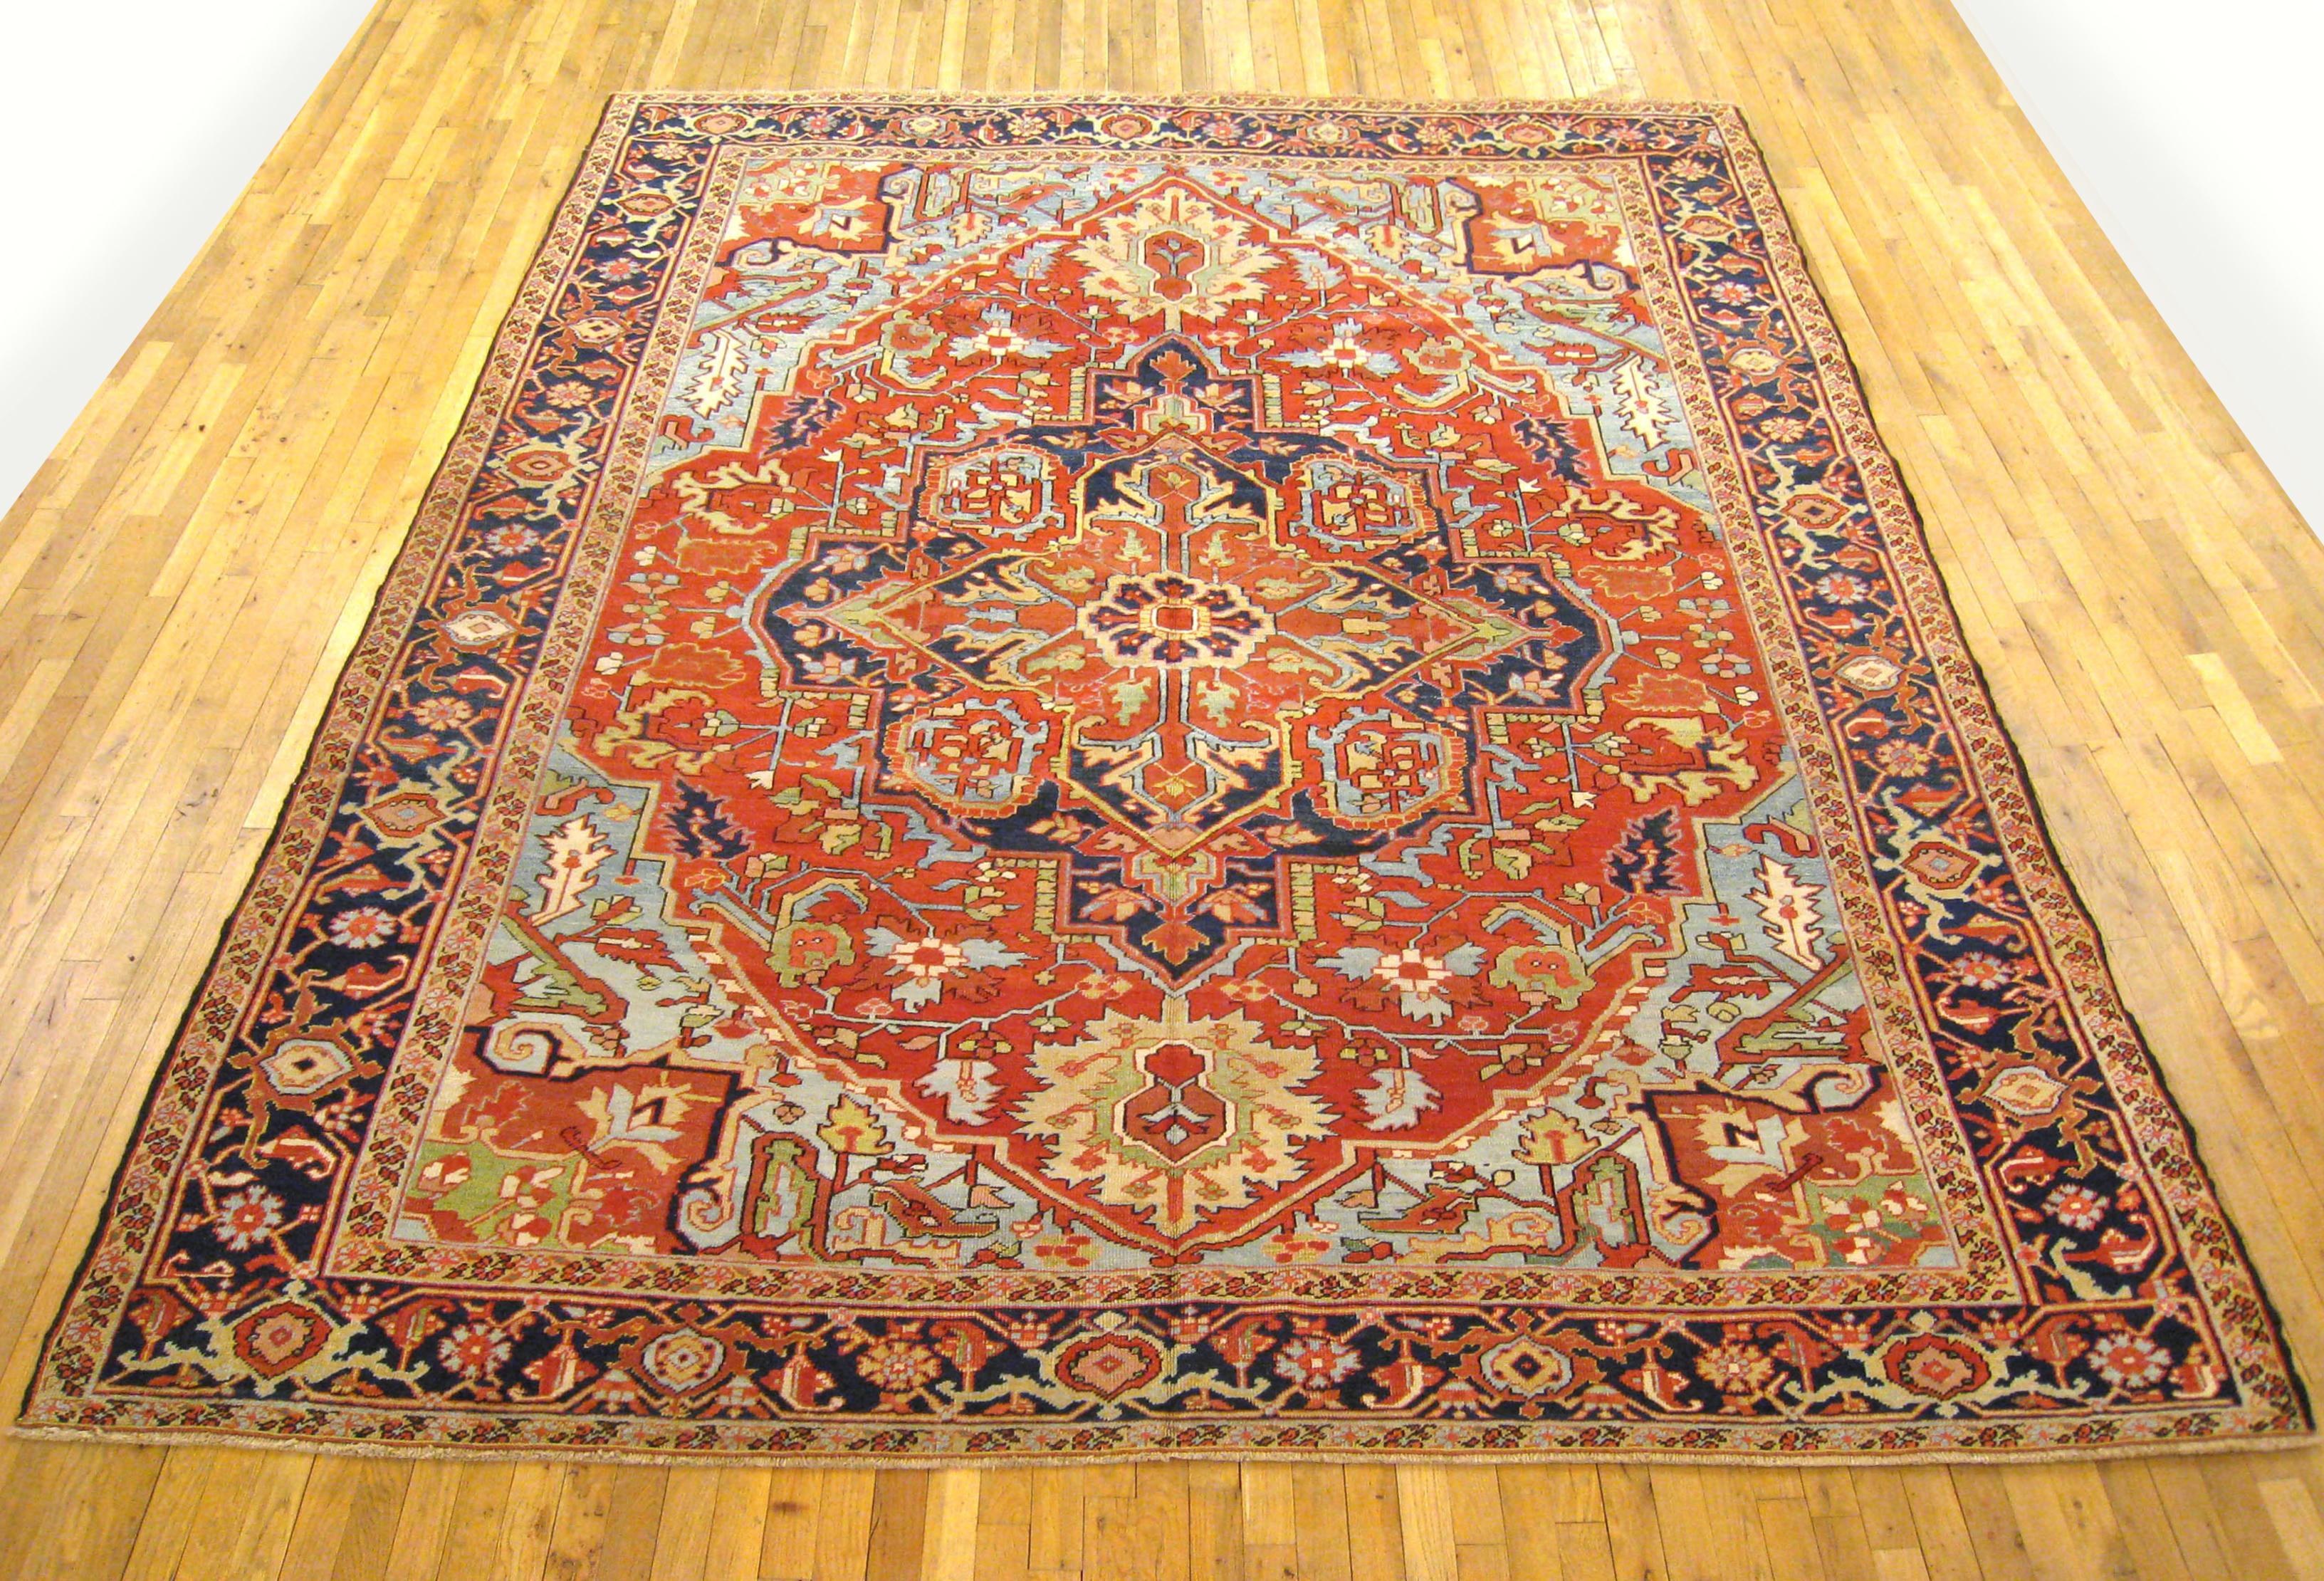 Antique Persian Heriz Oriental rug, Room size

An antique Persian Heriz oriental rug, size 11'2